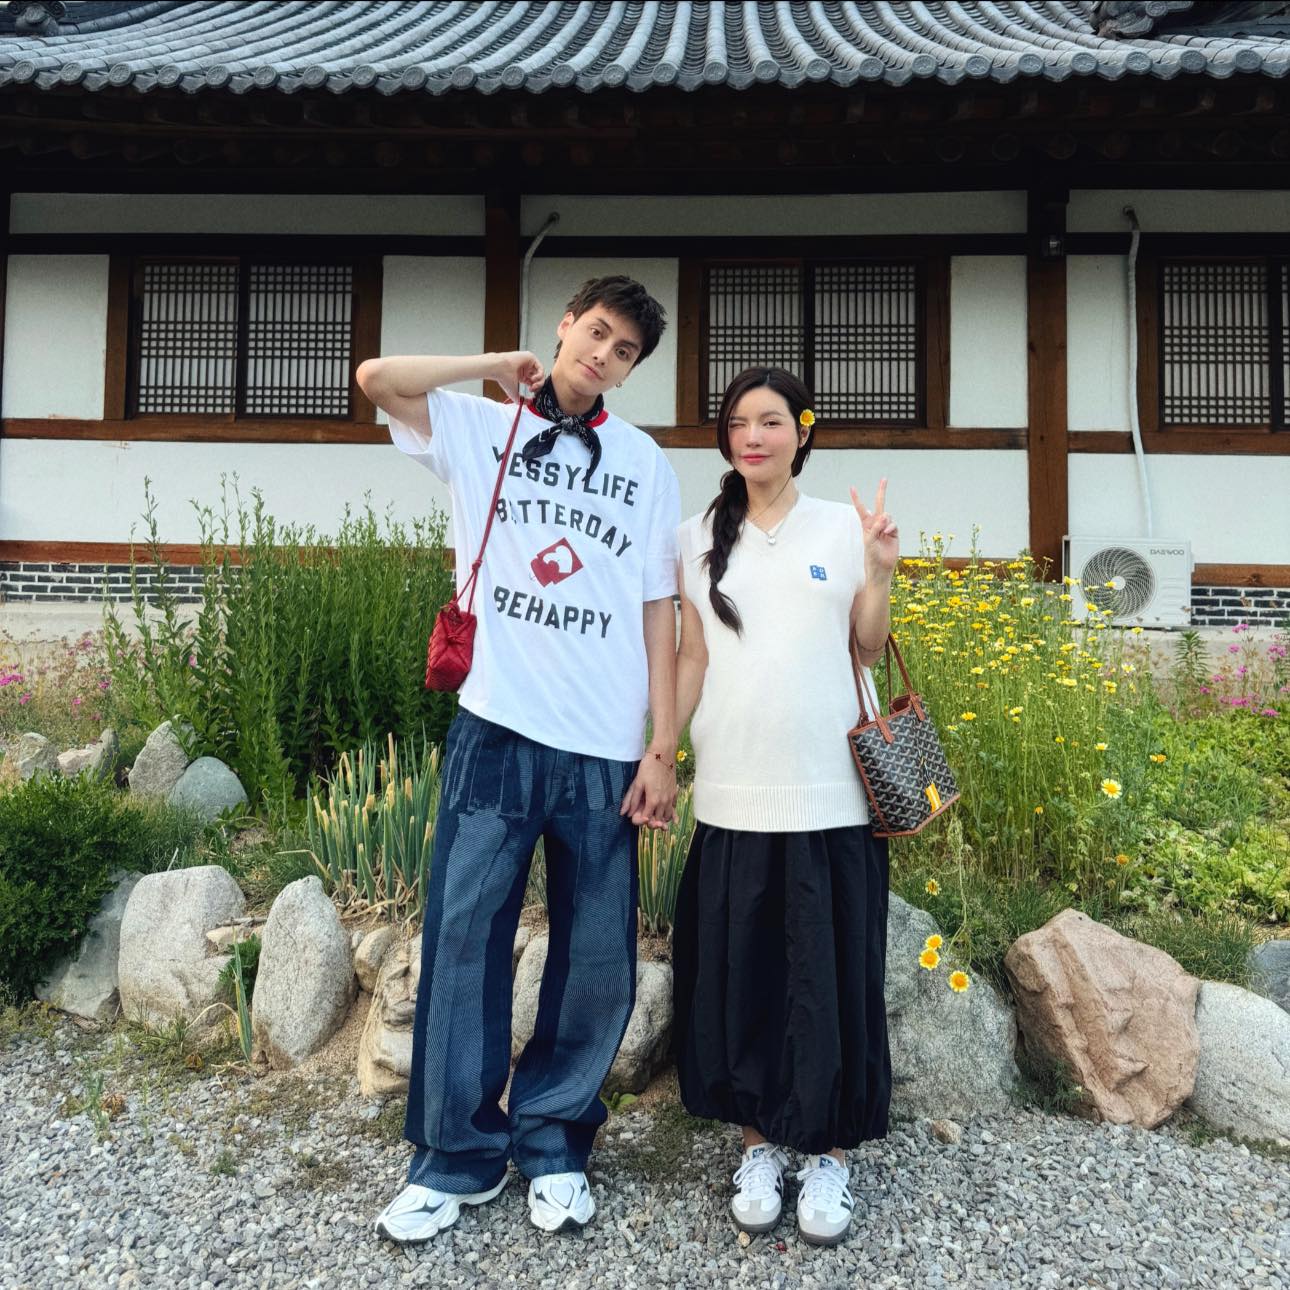 Tuấn Dương dẫn Lucie Nguyễn đi mua nhà ở Hàn Quốc, dù trước đó bị 'coi thường vì không có gì' - ảnh 4